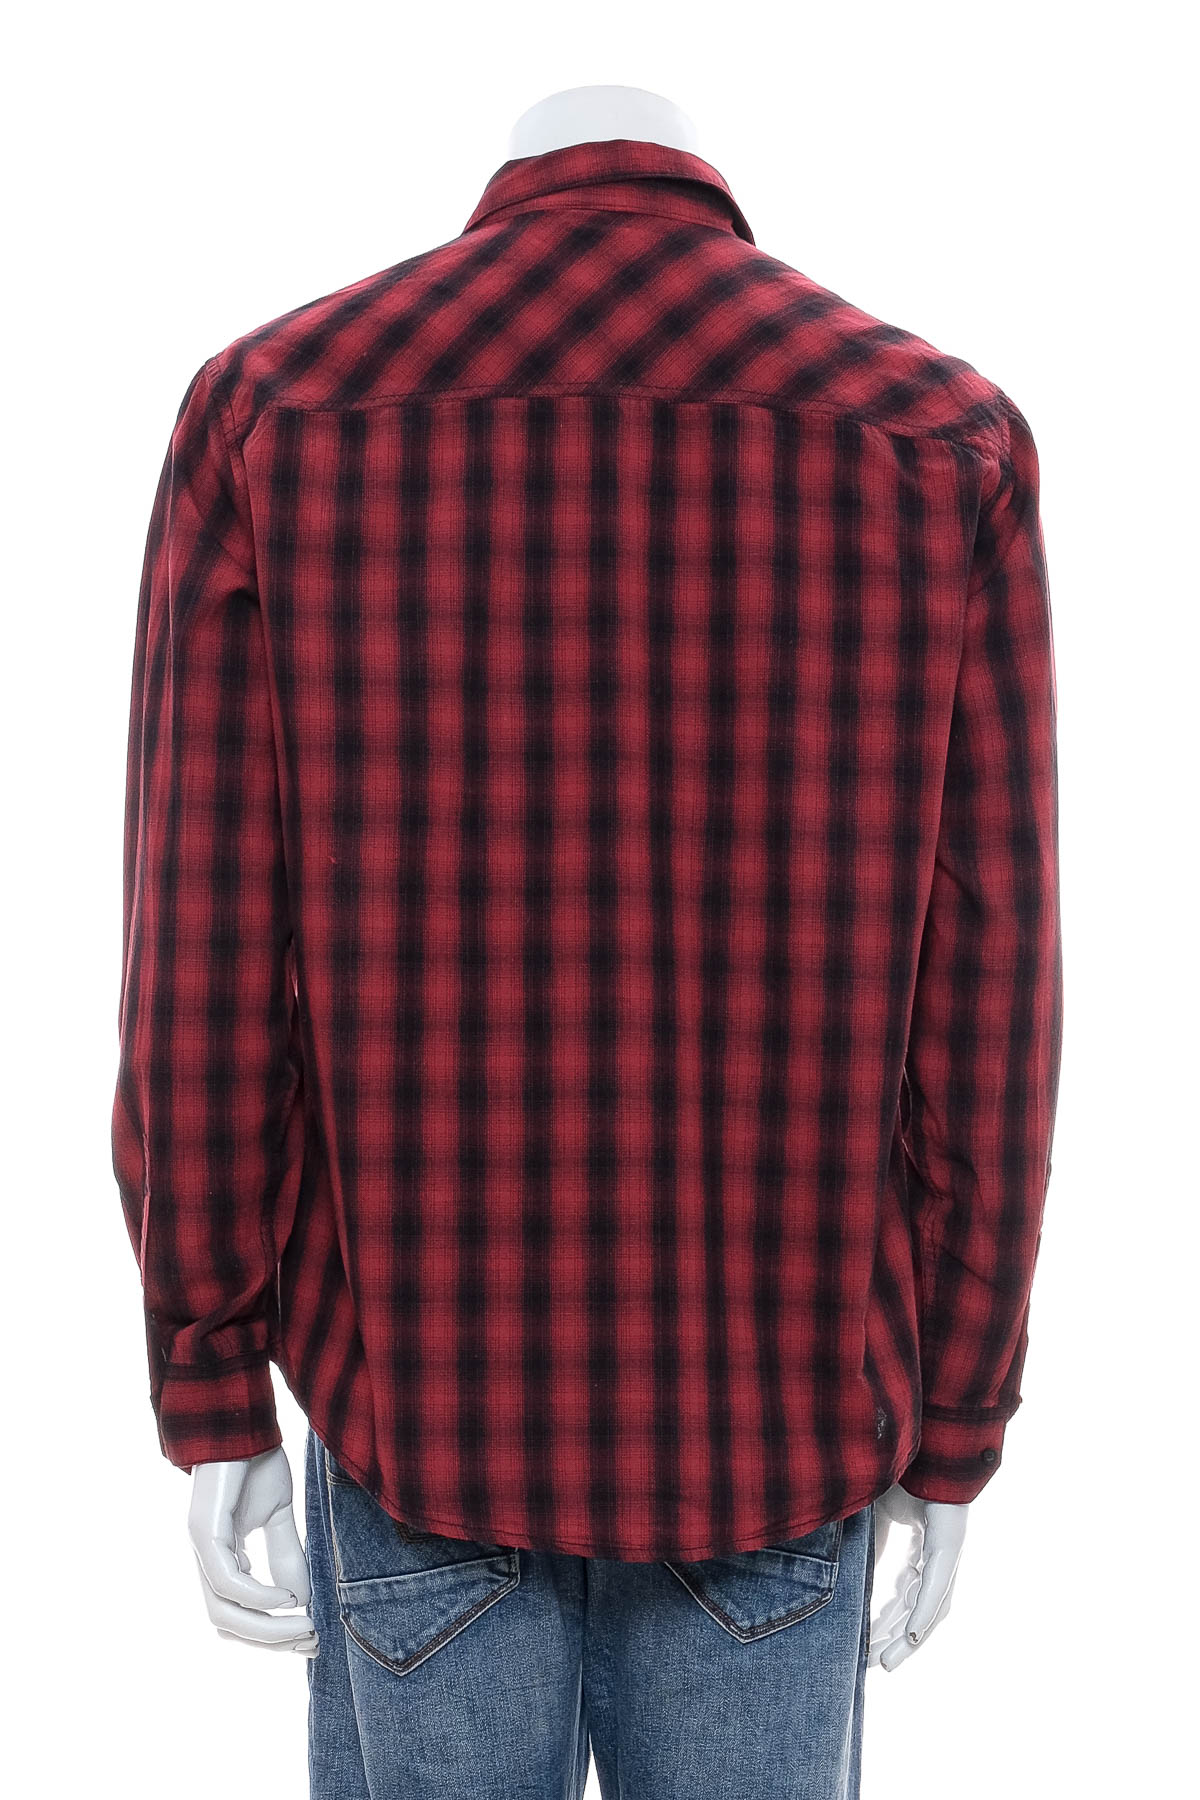 Ανδρικό πουκάμισο - Terranova - 1